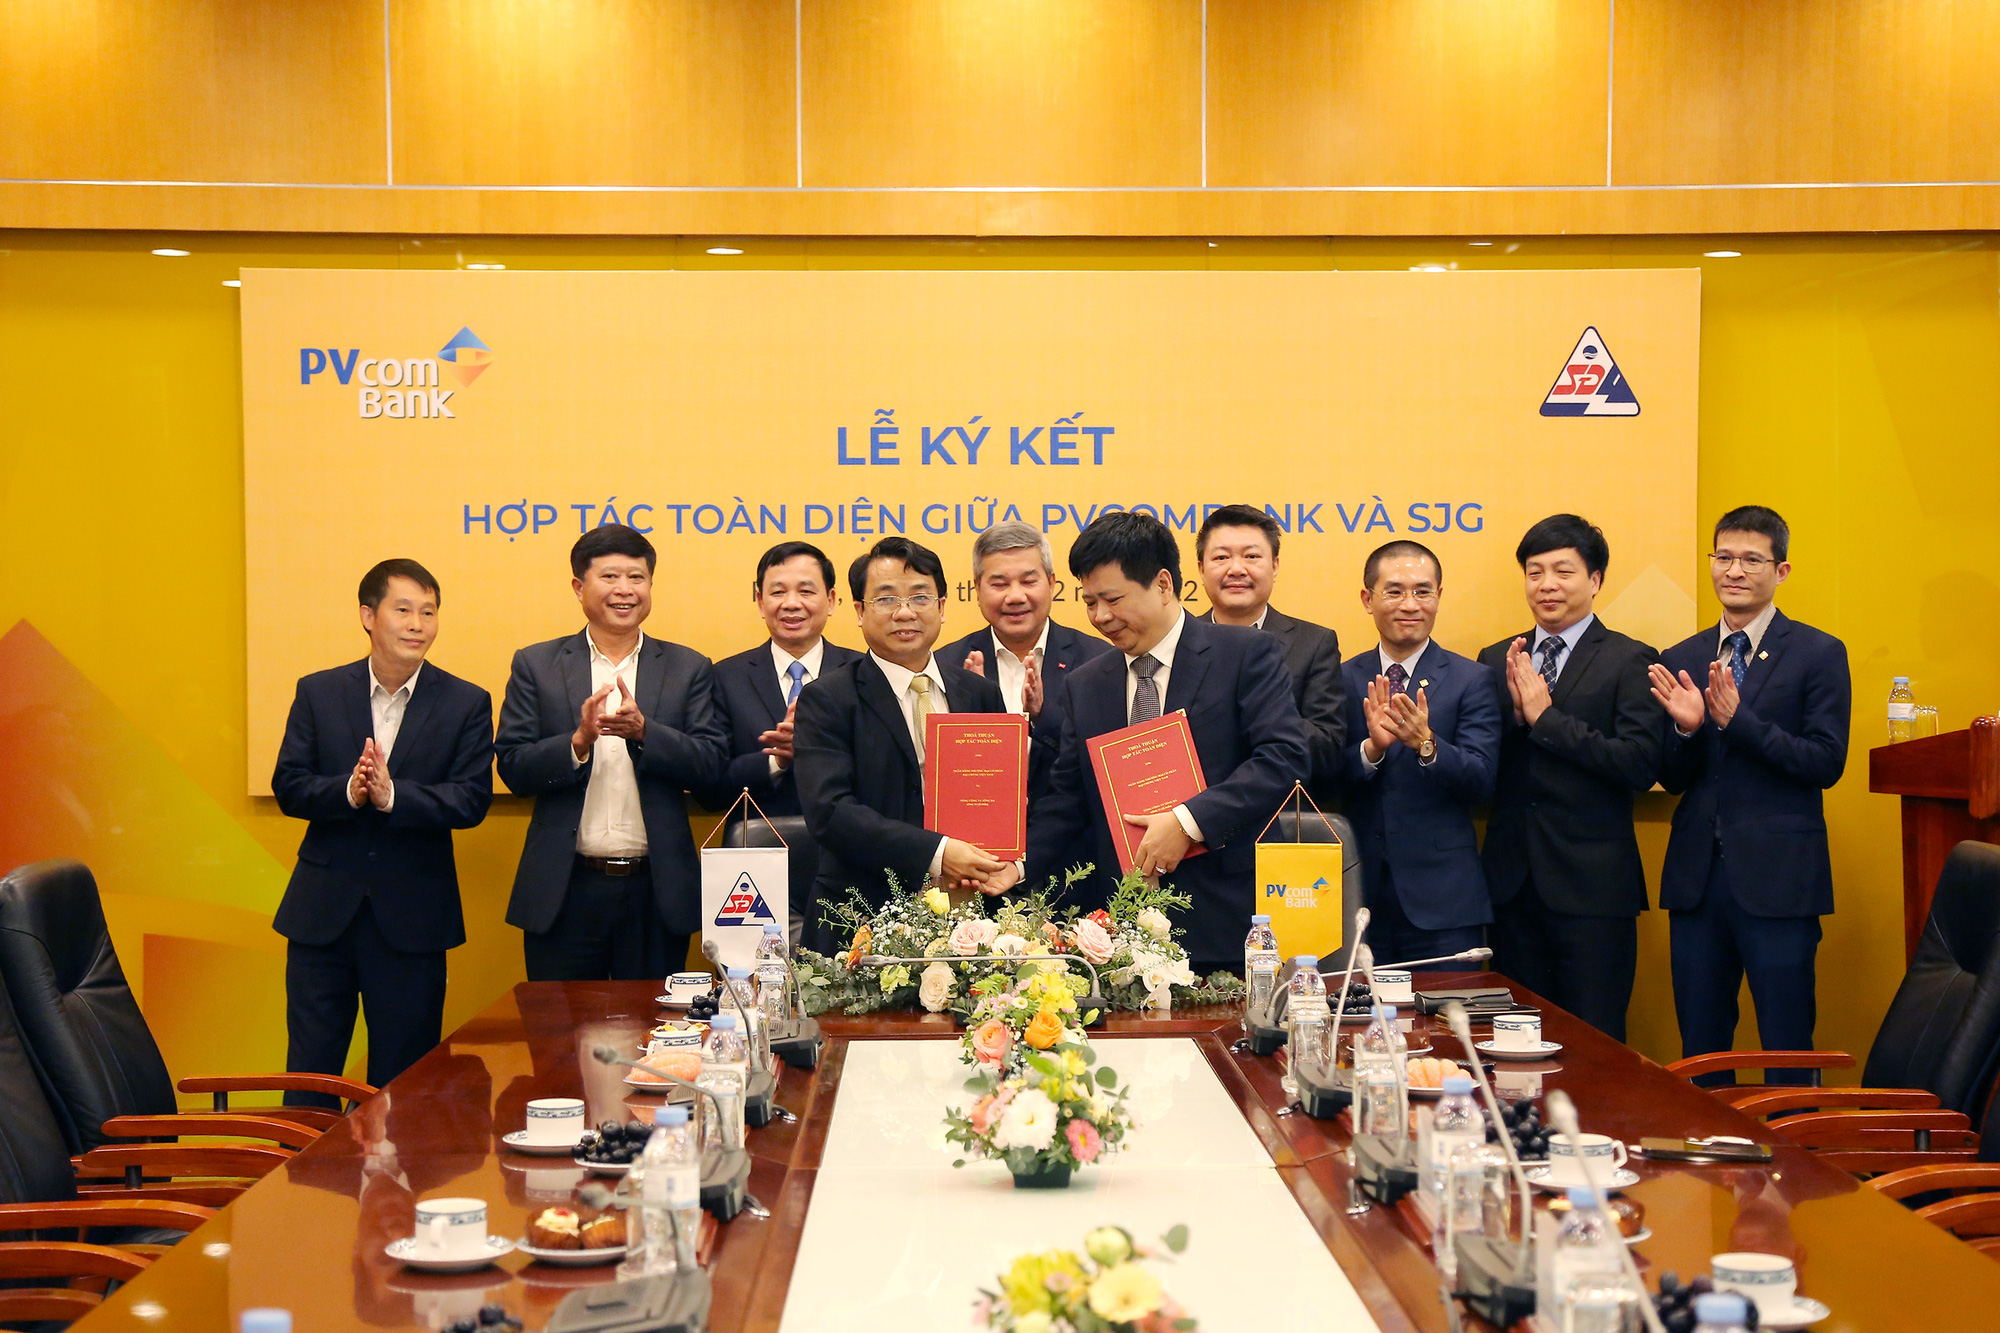 PVcomBank và Tổng Công ty Sông Đà ký thỏa thuận hợp tác toàn diện - Ảnh 1.